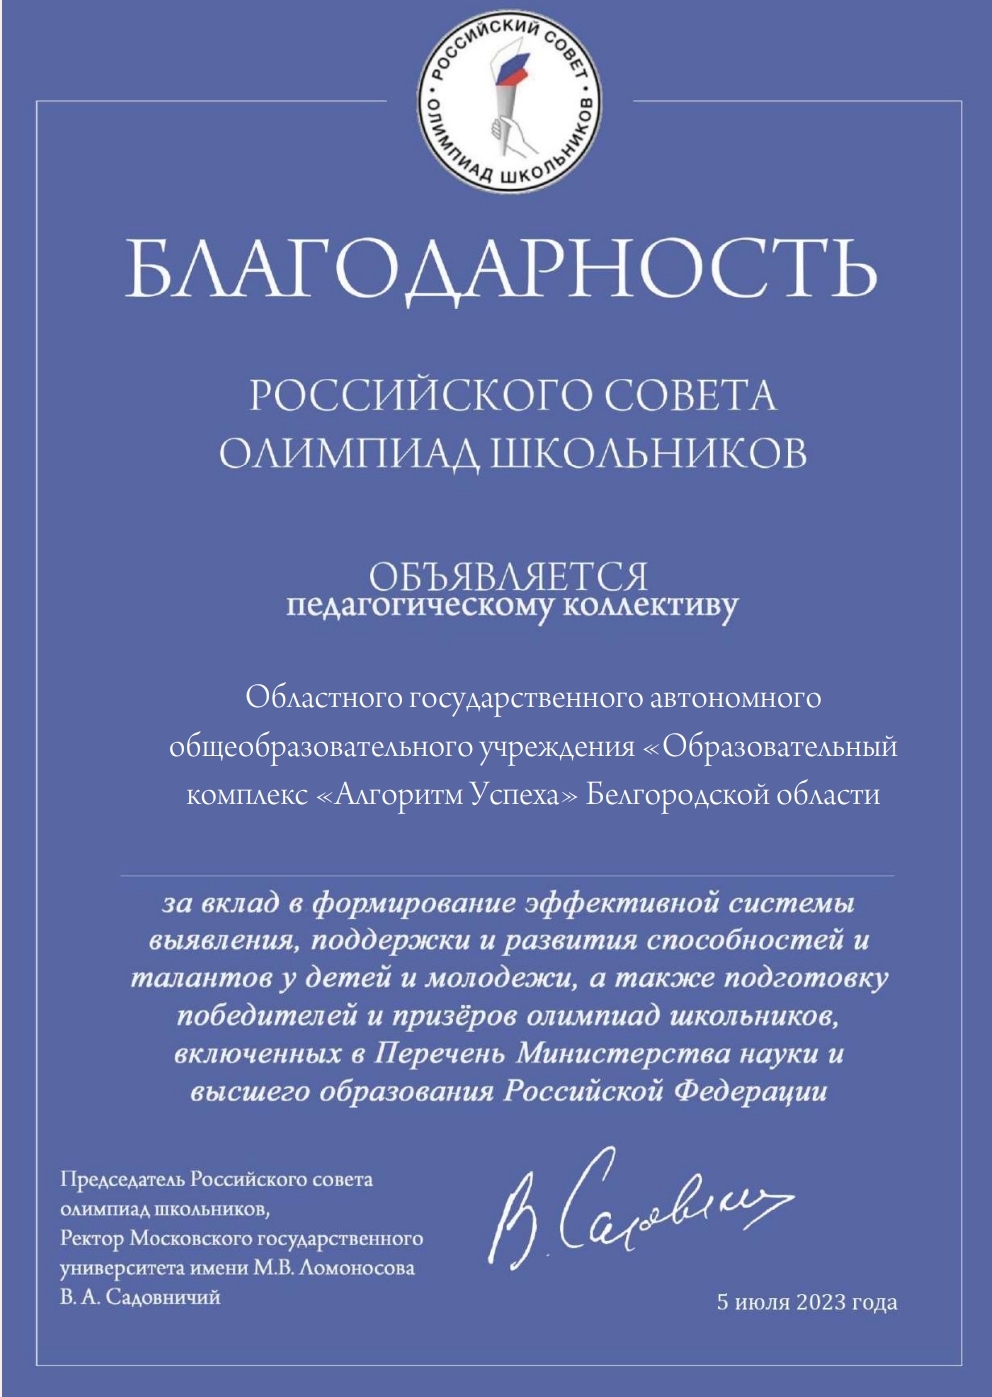 Российский совет олимпиад школьников опубликовал благодарности педагогическим коллективам.